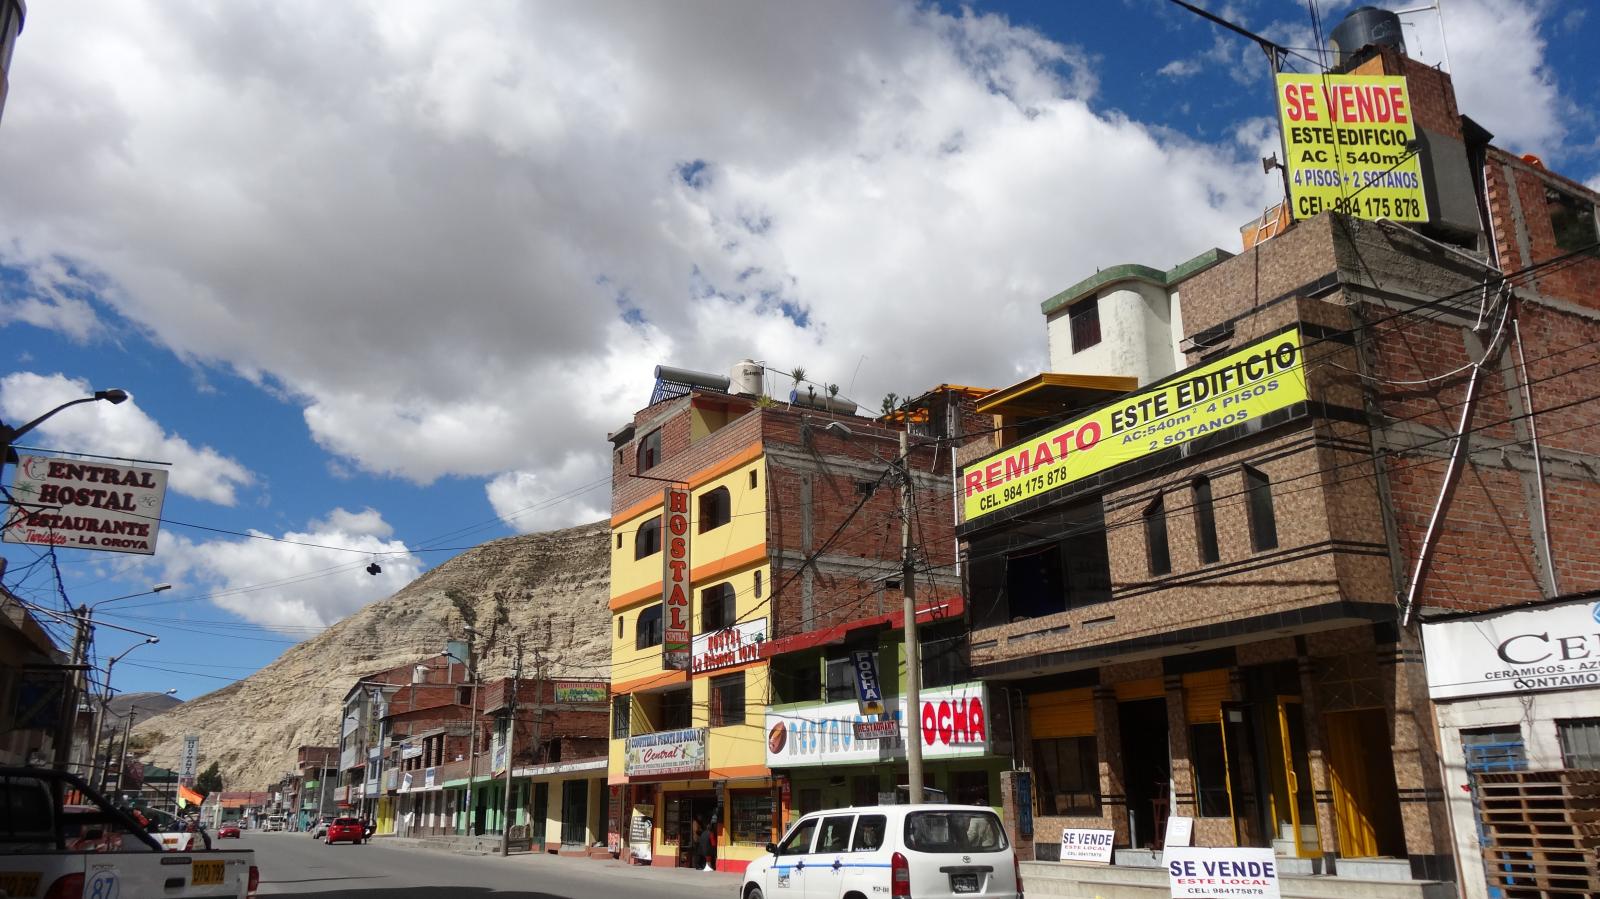 Vendo Hotel - Local comercial en Peru